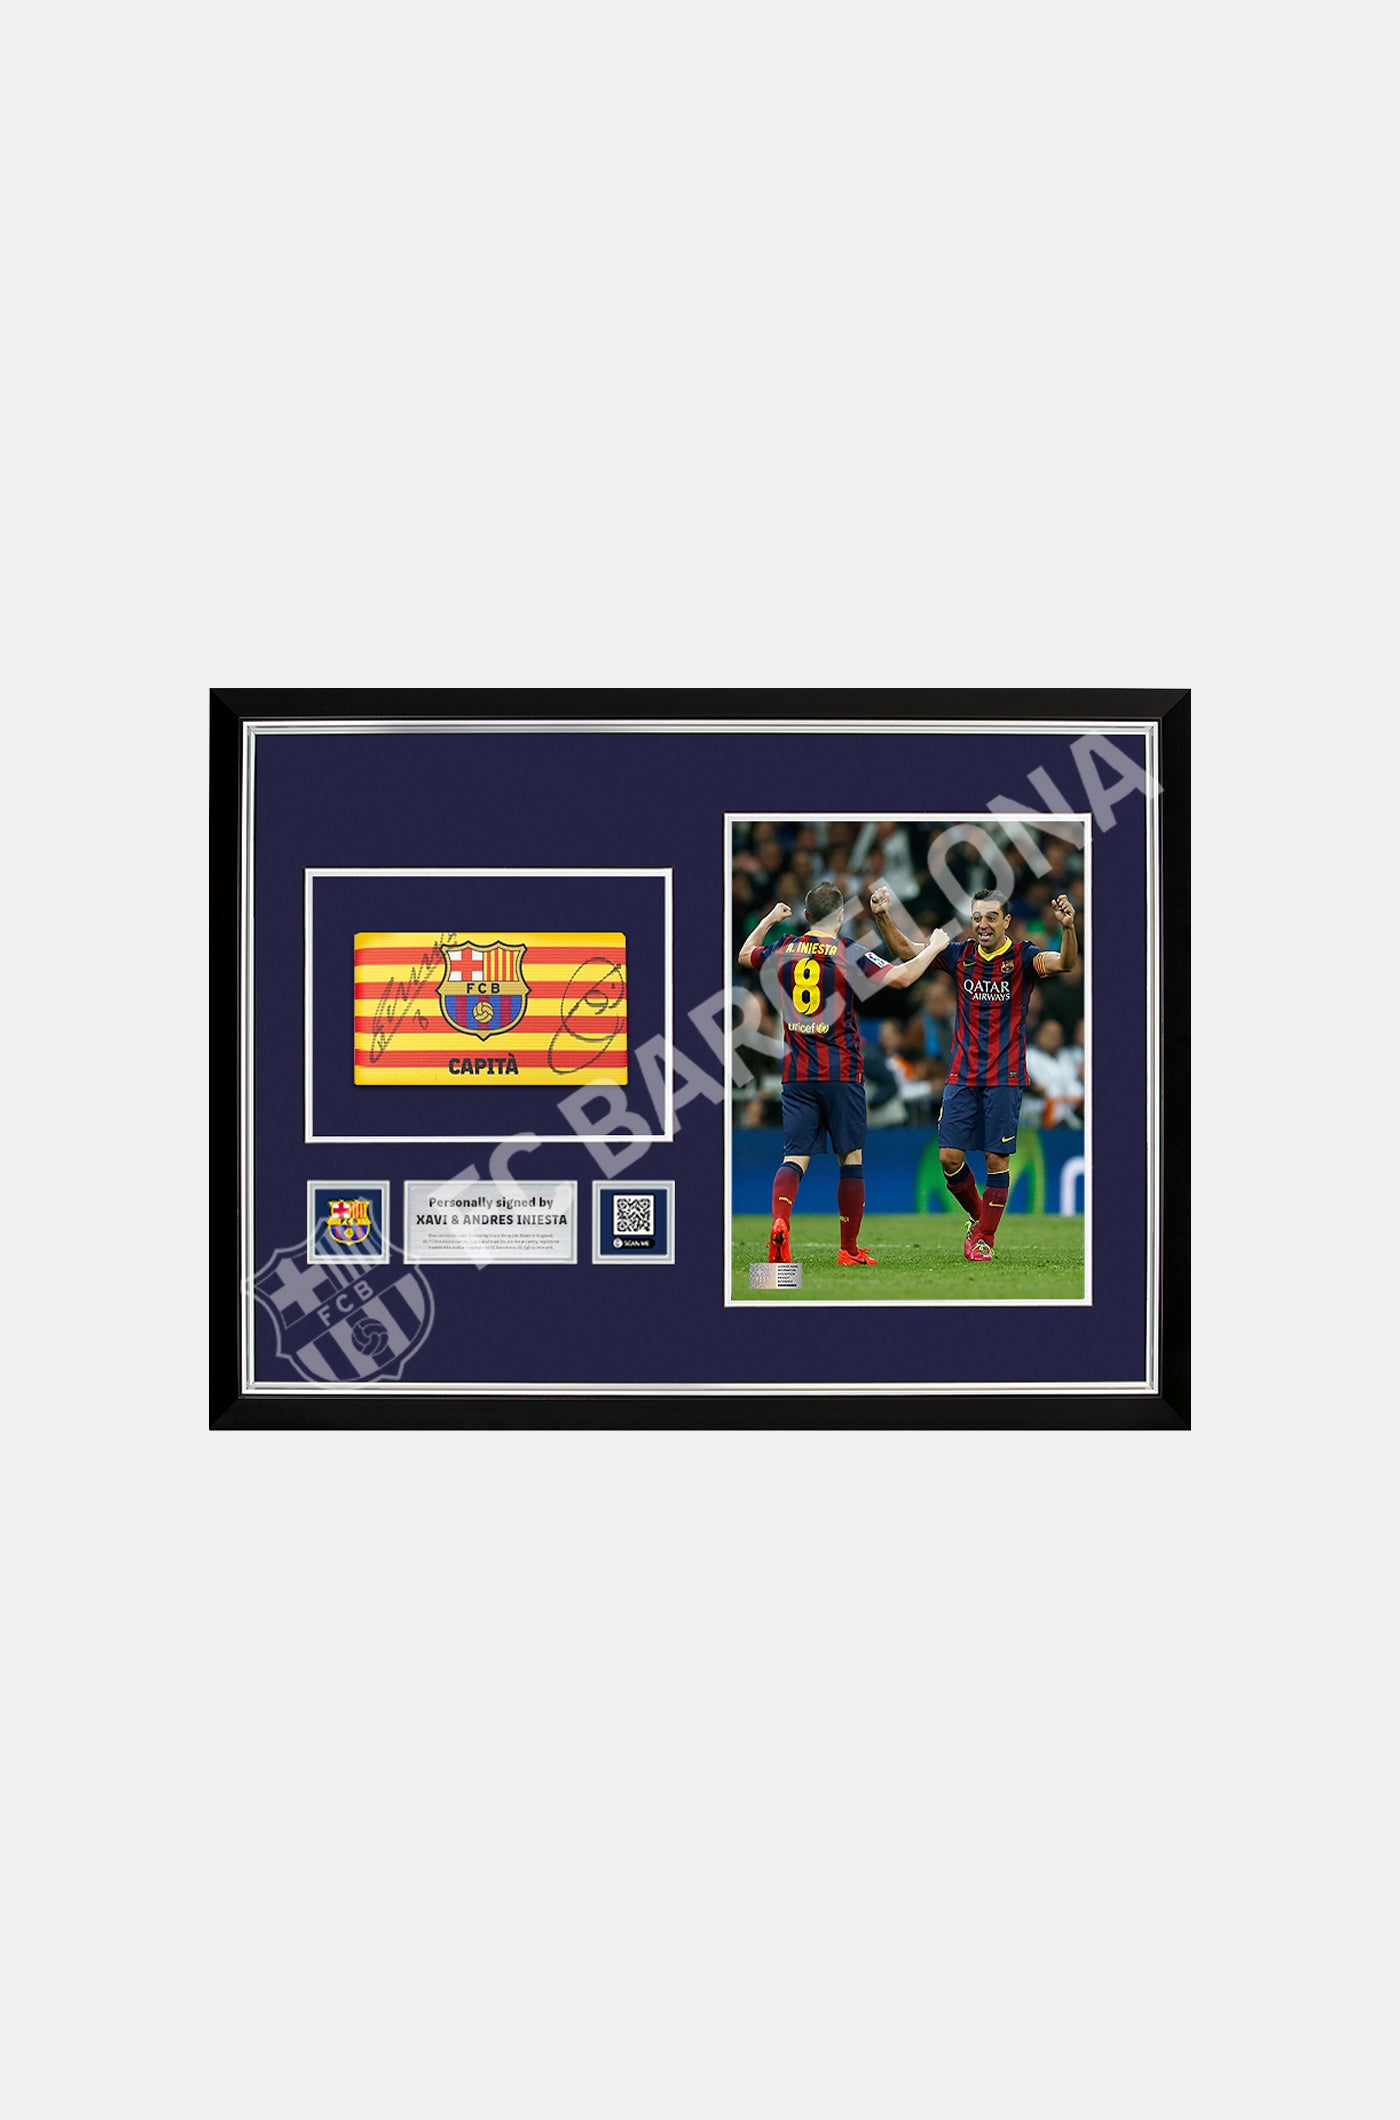 Brassard officiel de capitaine du FC Barcelone signé par Xavi Hernandez et Andrés Iniesta